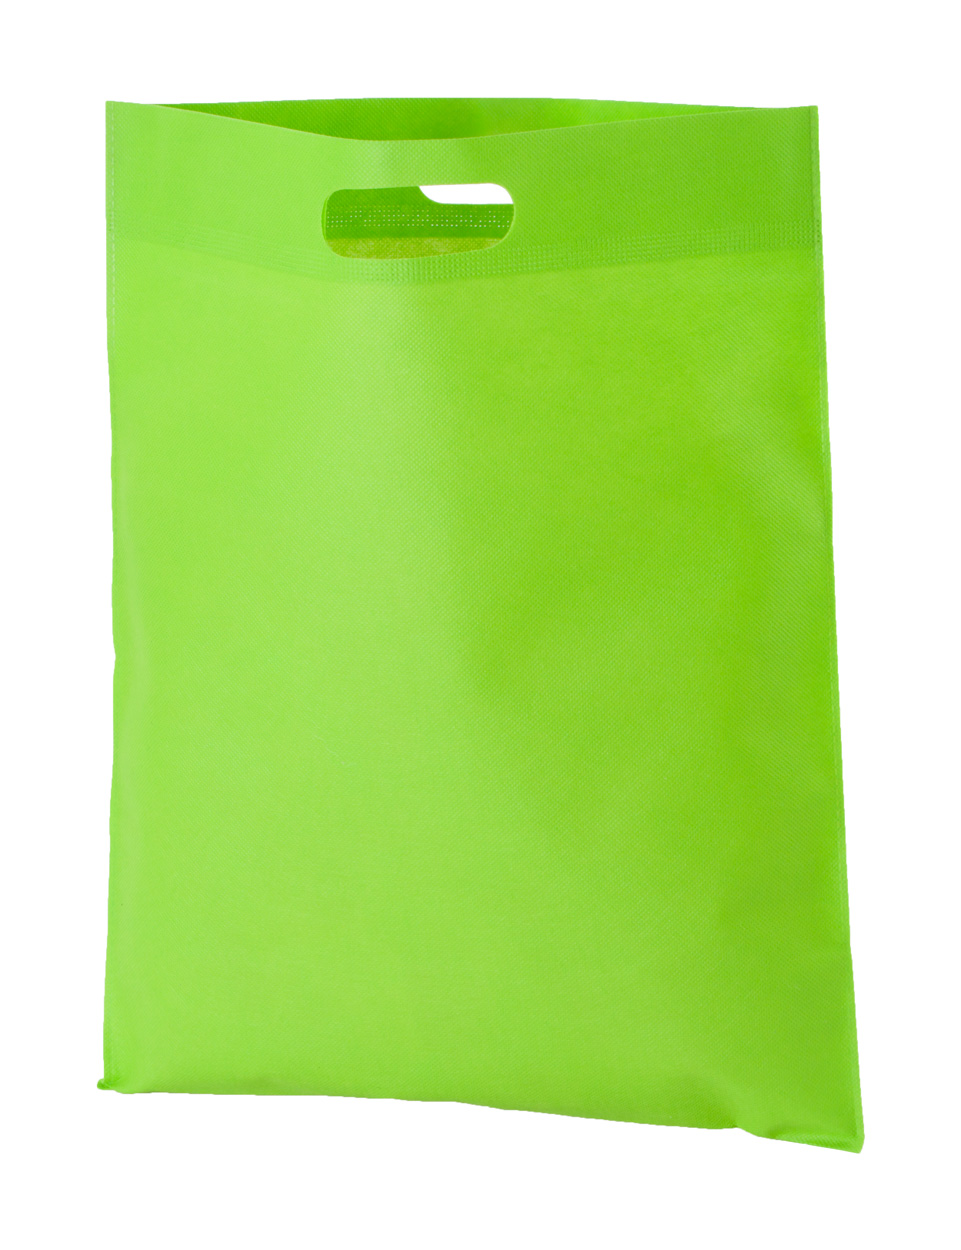 Shopping bag BLASTER made of non-woven fabric